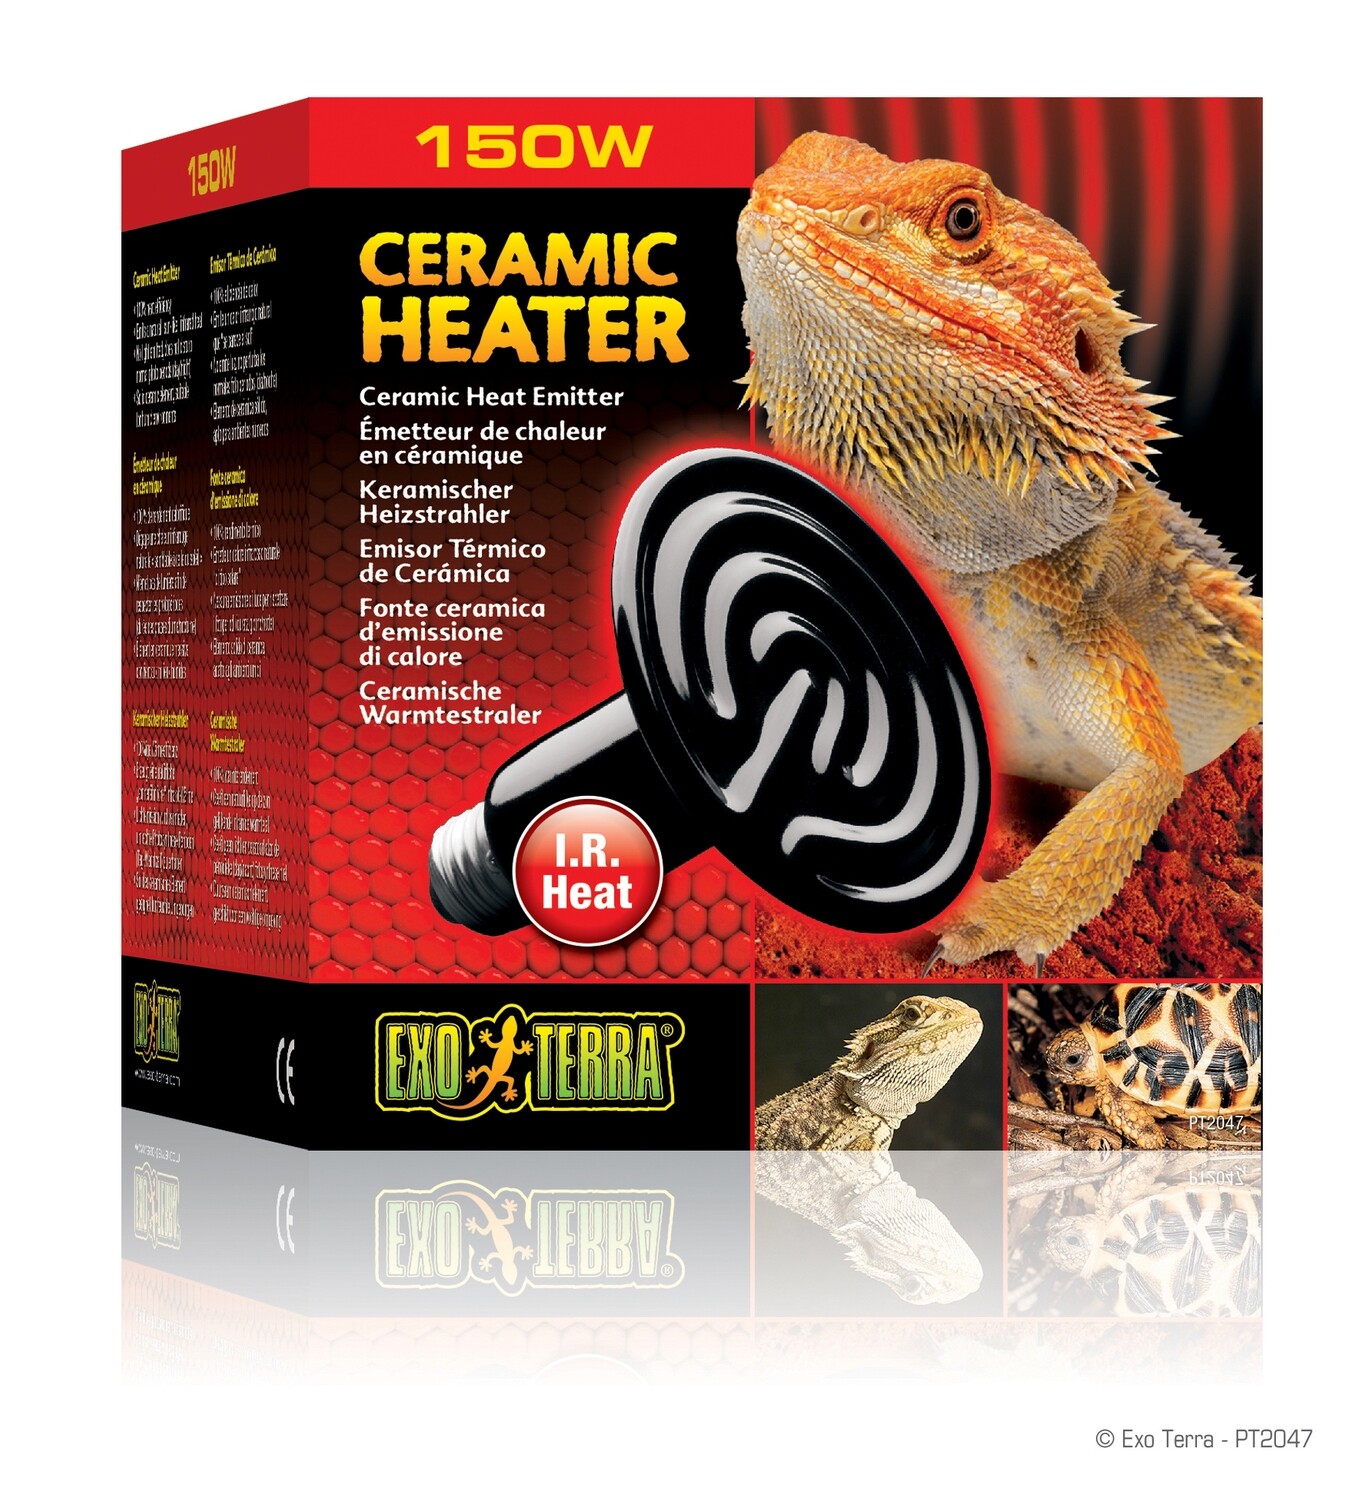 Exo Terra Ceramic Heater - 150W